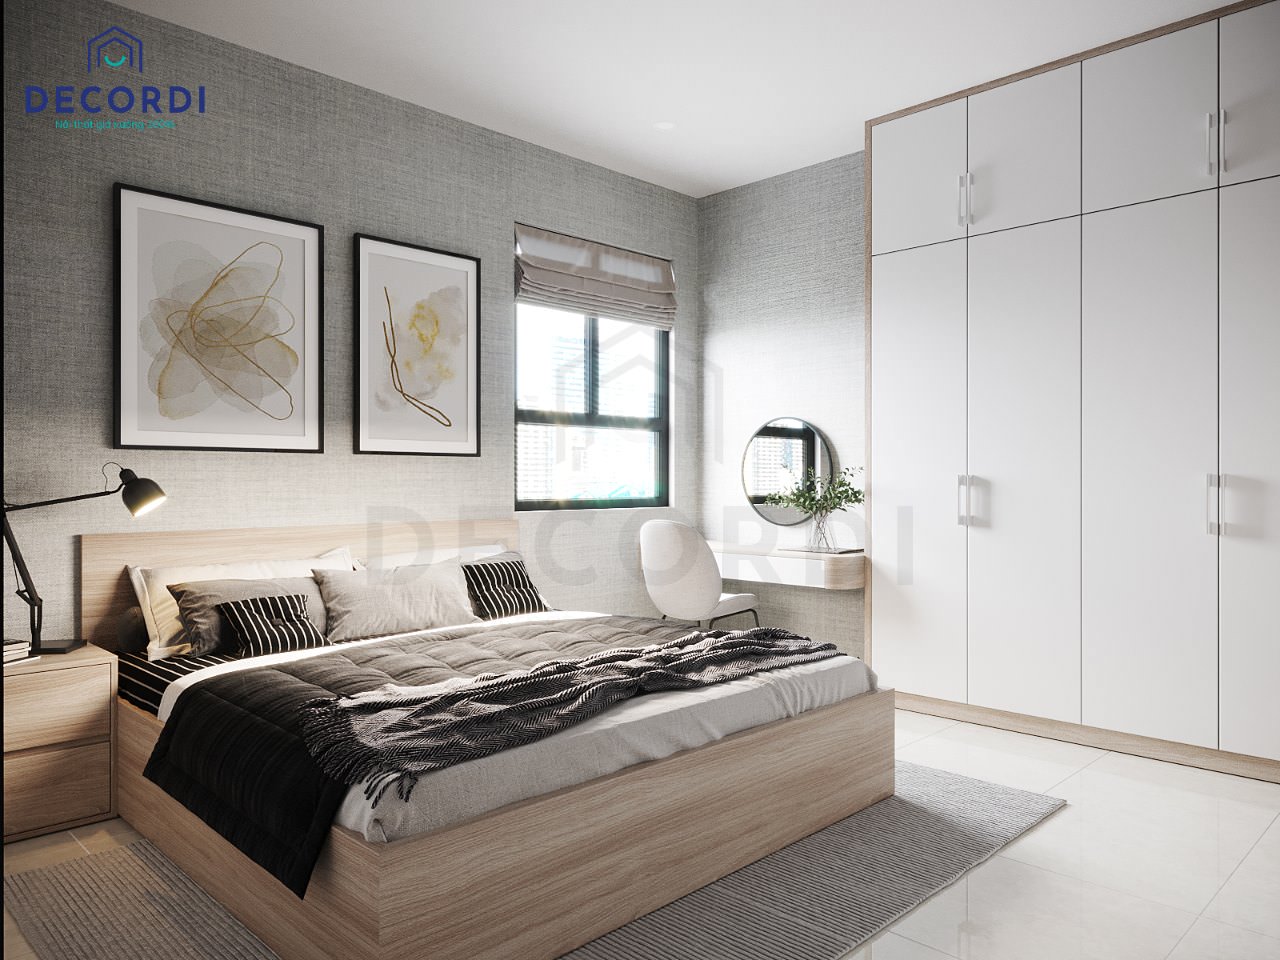 Gạch lát nền phòng ngủ có độ cứng cao giúp gia chủ bố trí được nhiều đồ nội thất mà không sợ hư hỏng nền nhà